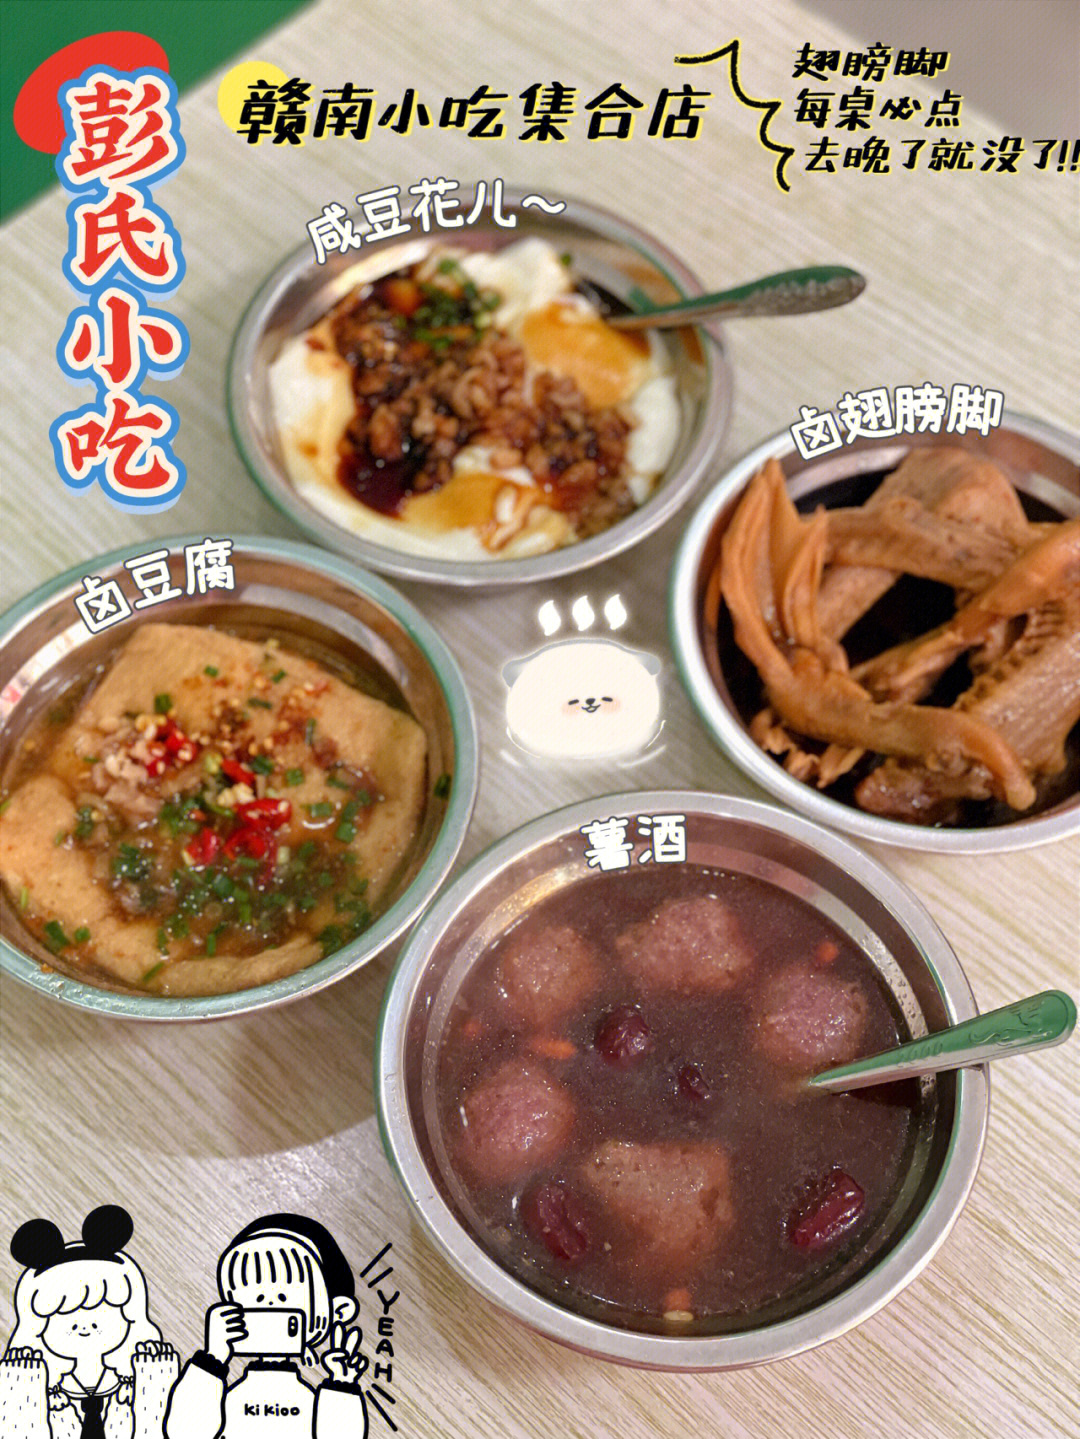 石城芋饺的由来图片